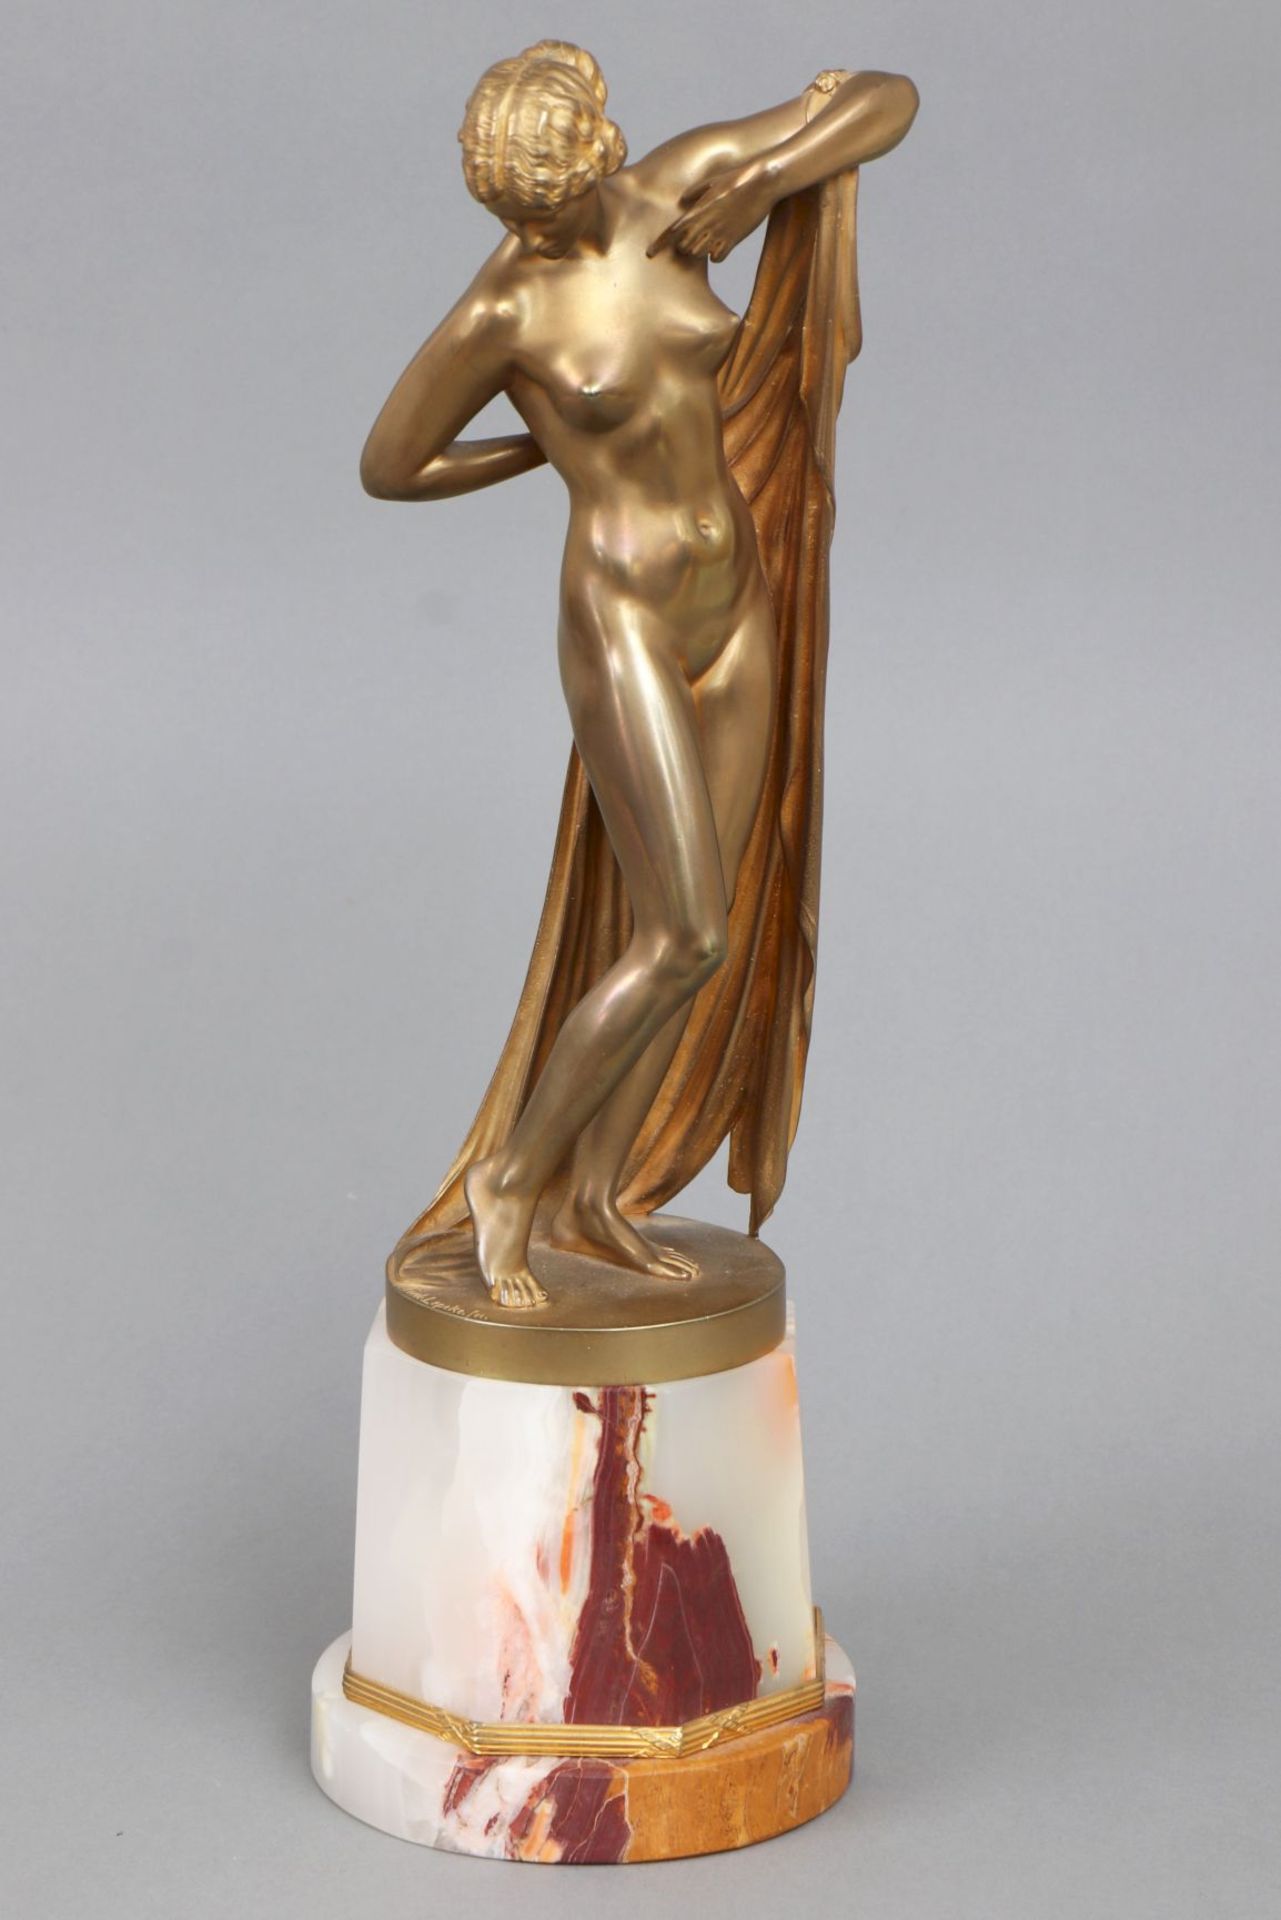 FERDINAND LEPCKE (1866-1909) Bronzeplastik ¨Badende mit Tuch¨ (¨Phryne¨)